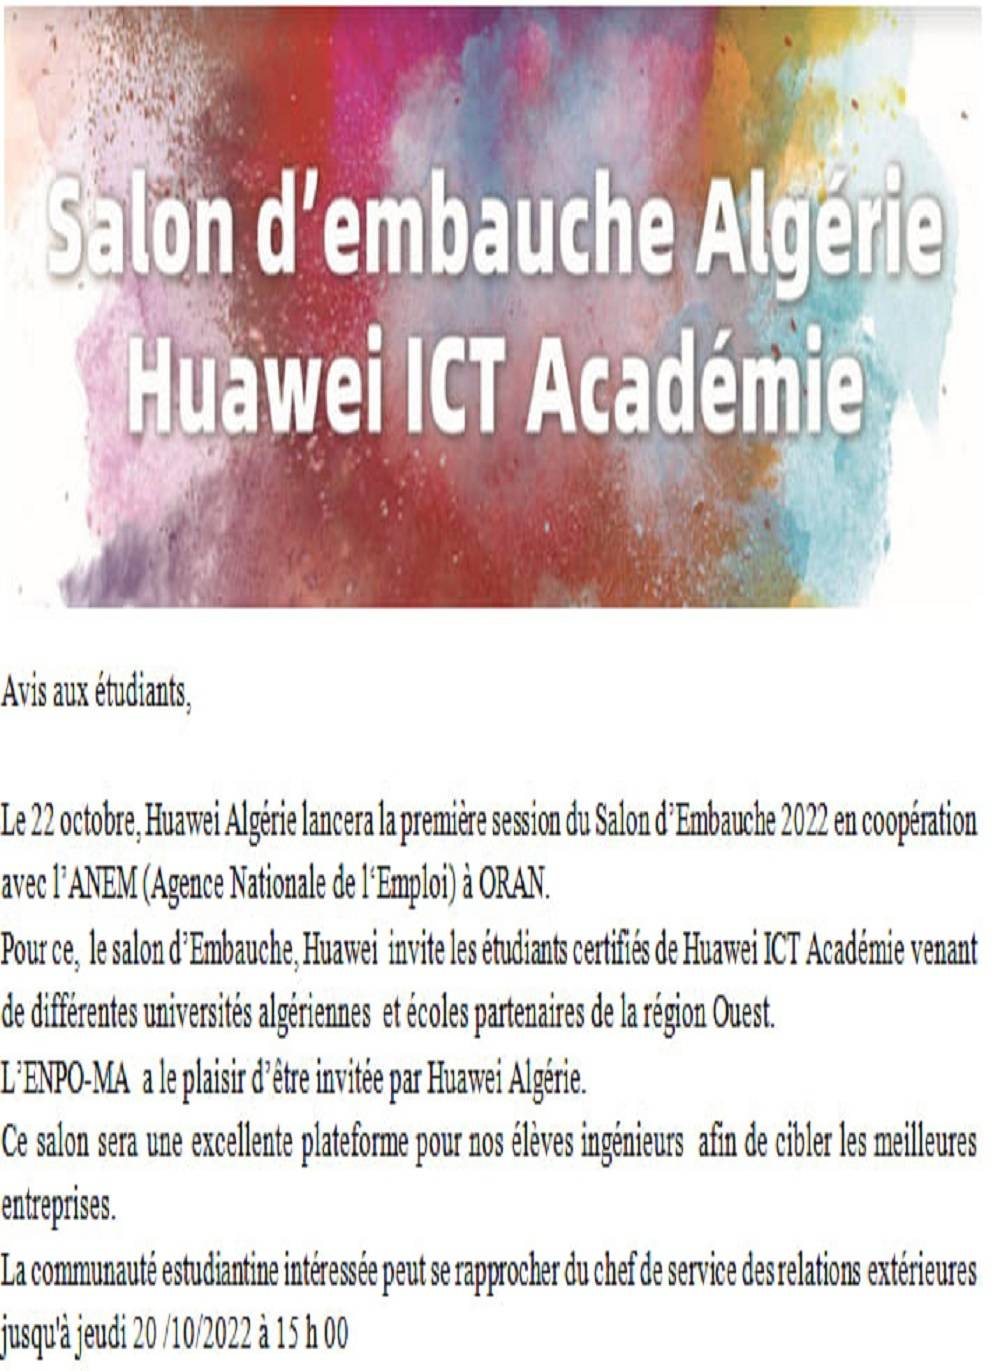 Salon d'embauche Huawei ICT Académie